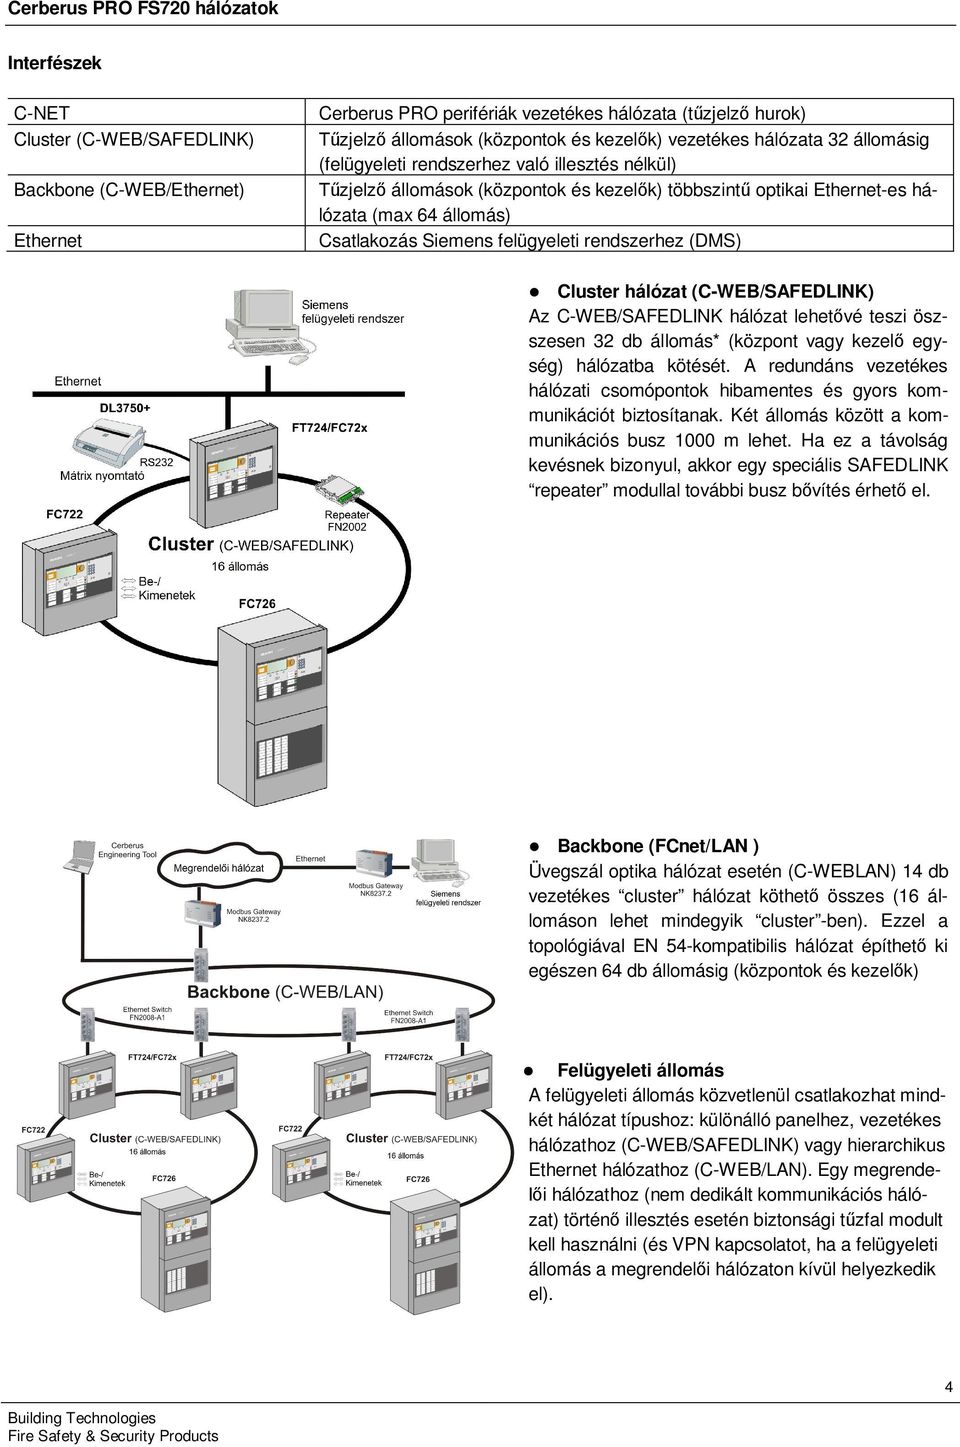 Csatlakozás Siemens felgyeleti rendszerhez (DMS) l Cluster hálózat (C-WEB/SAFEDLINK) Az C-WEB/SAFEDLINK hálózat lehetővé teszi öszszesen 32 db állomás* (központ vagy kezelő egység) hálózatba kötését.